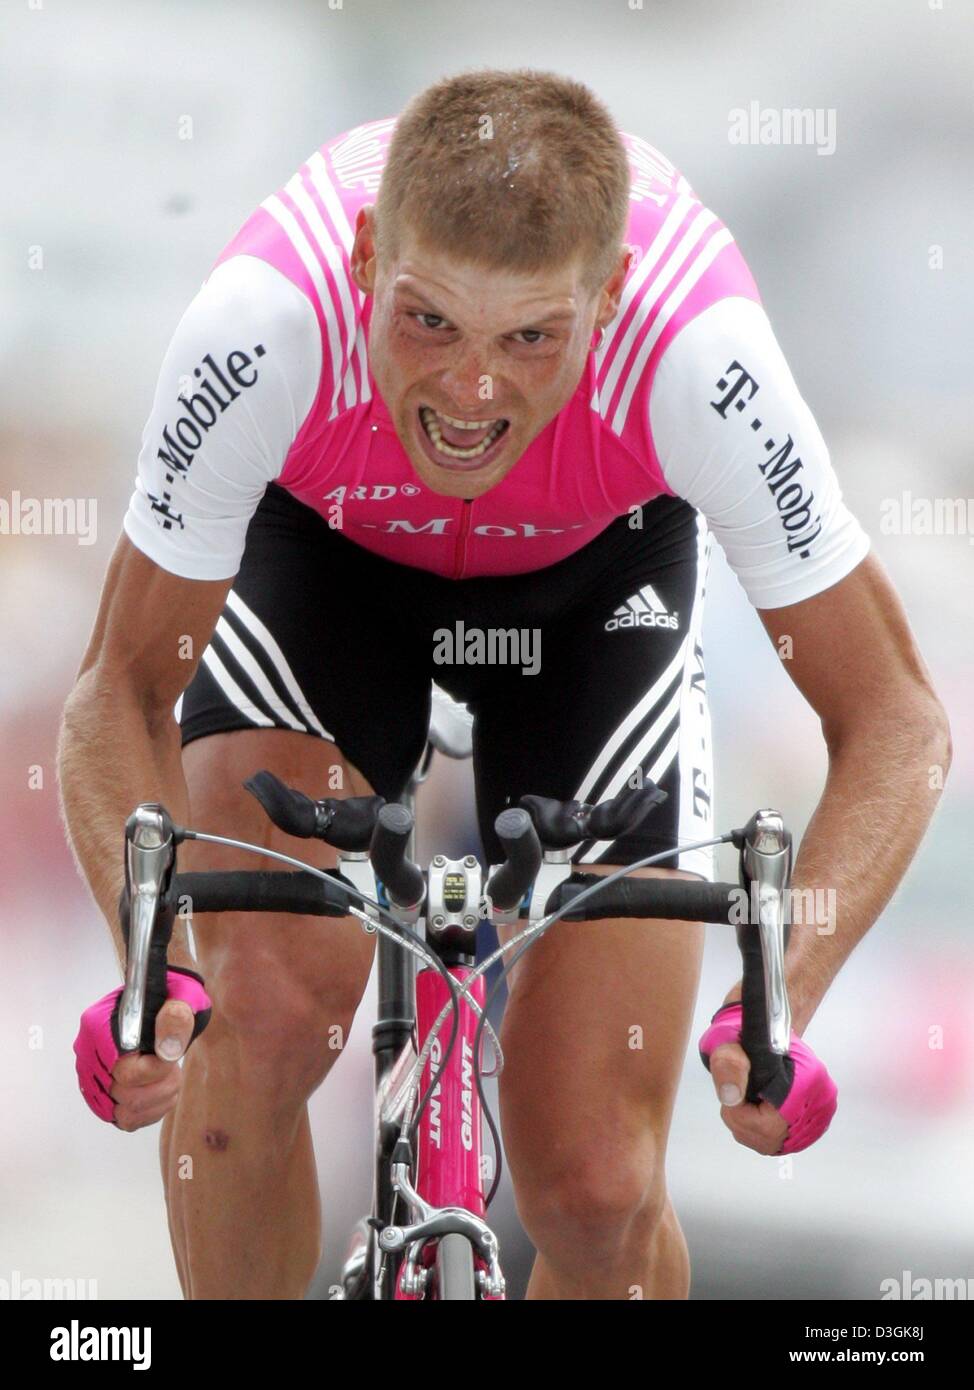 Afp) - cavalier allemand Jan Ullrich vainqueur olympique et l'équipe de  T-Mobile se déplace sur son vélo au cours de la 16e étape du Tour de France  à l'Alpe d'Huez, France, le